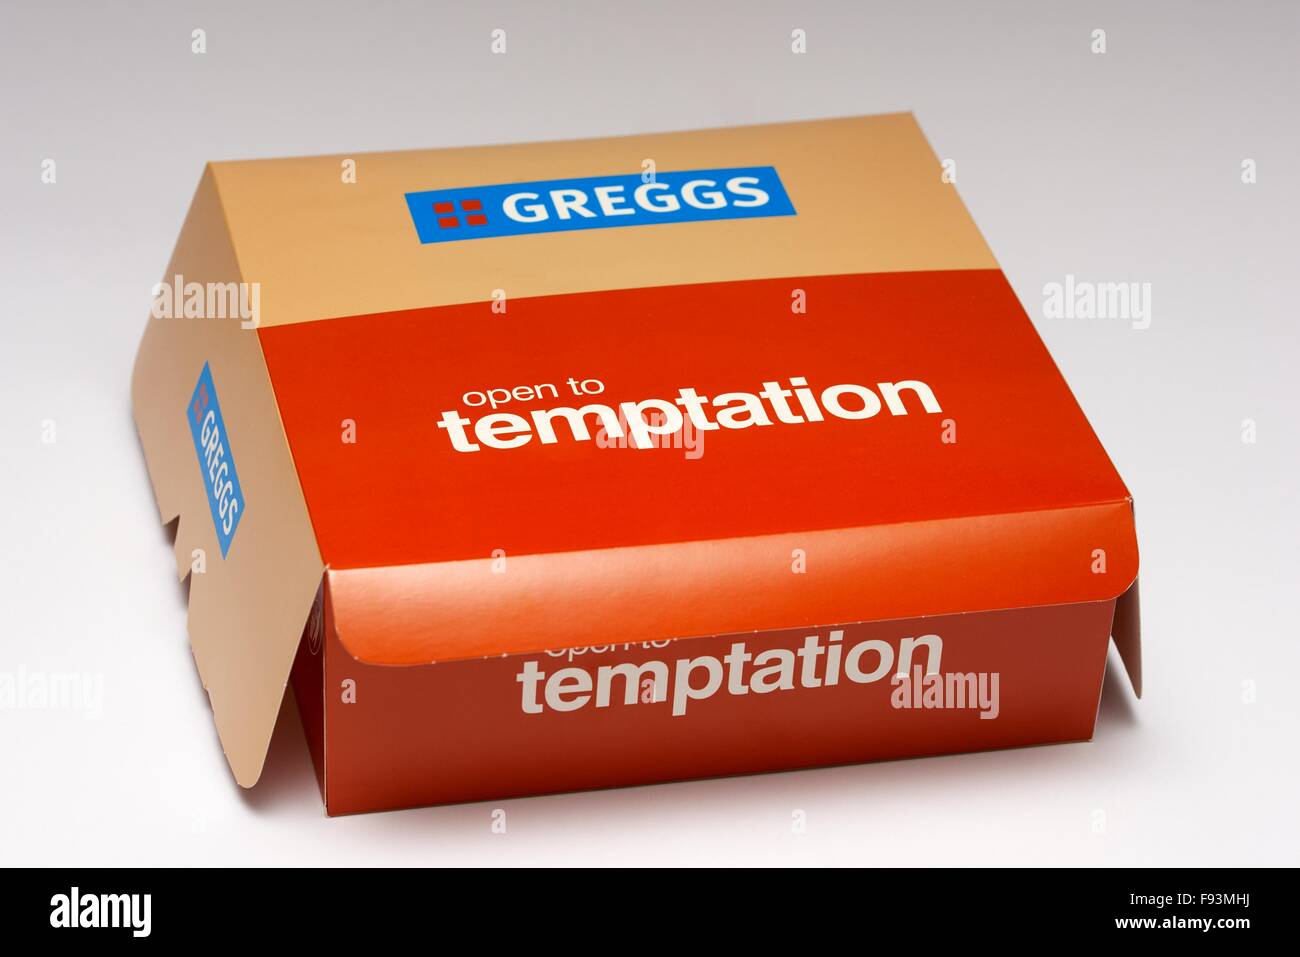 Greggs aperto alla tentazione cake box Foto Stock